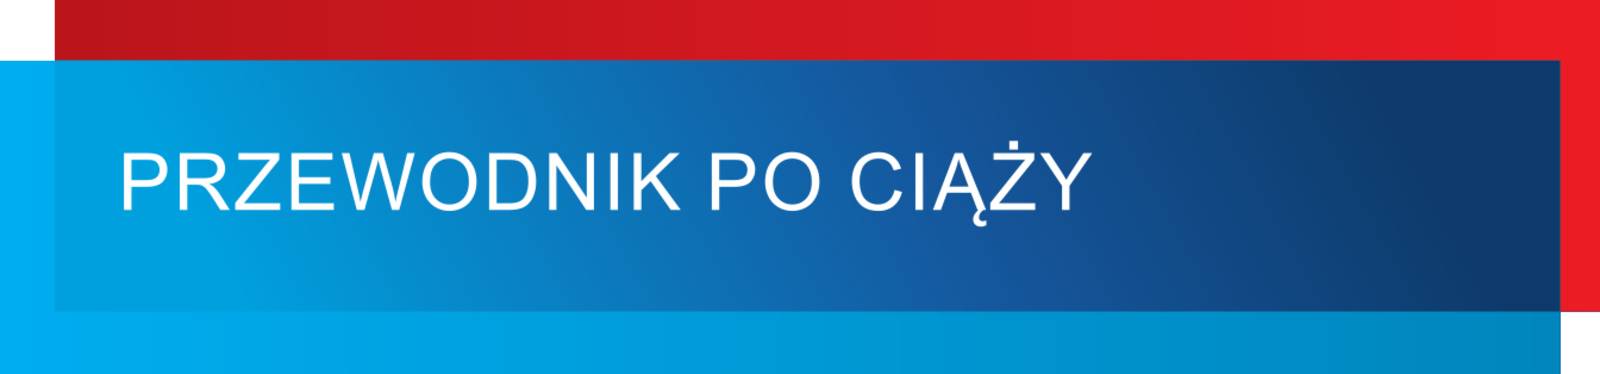 Grafisches Modul in den Farben Blau und Rot, dazu der Text: "PRZEWODNIK PO CIĄŻY".